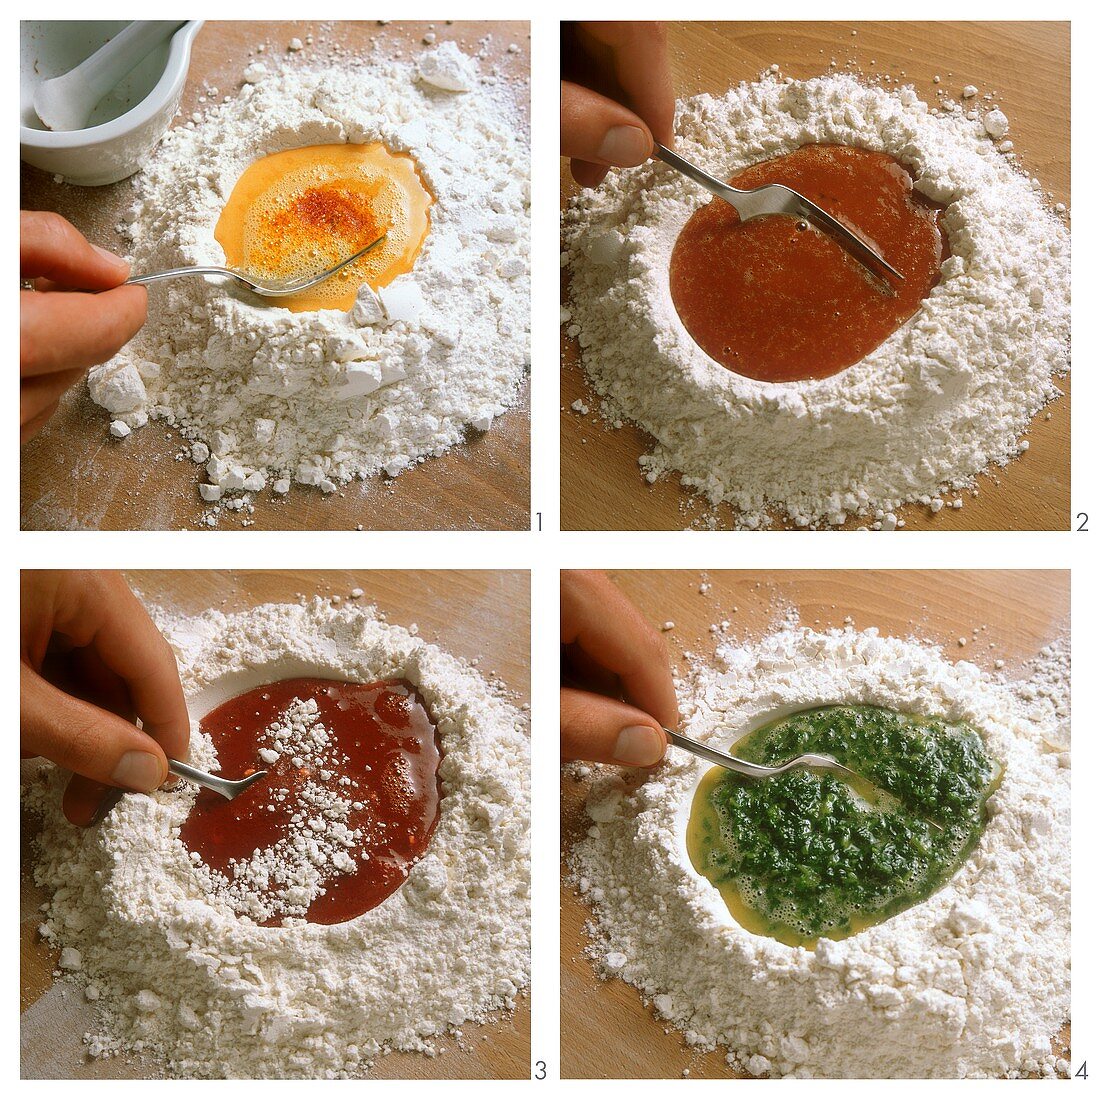 Nudelteig färben (mit Safran, Tomate, Rote Bete oder Spinat)